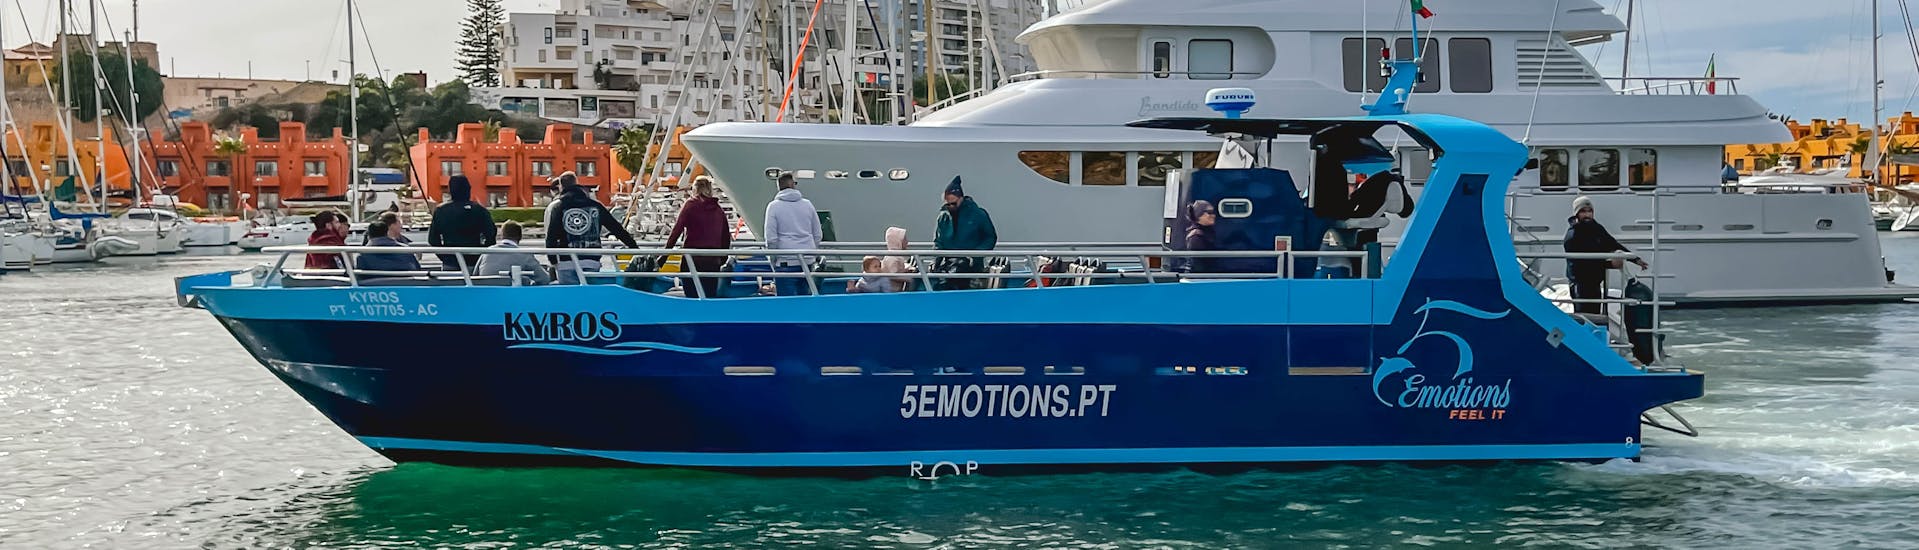 Das Boot von 5emotions Portimão während der Private Bootstour ab Portimão.